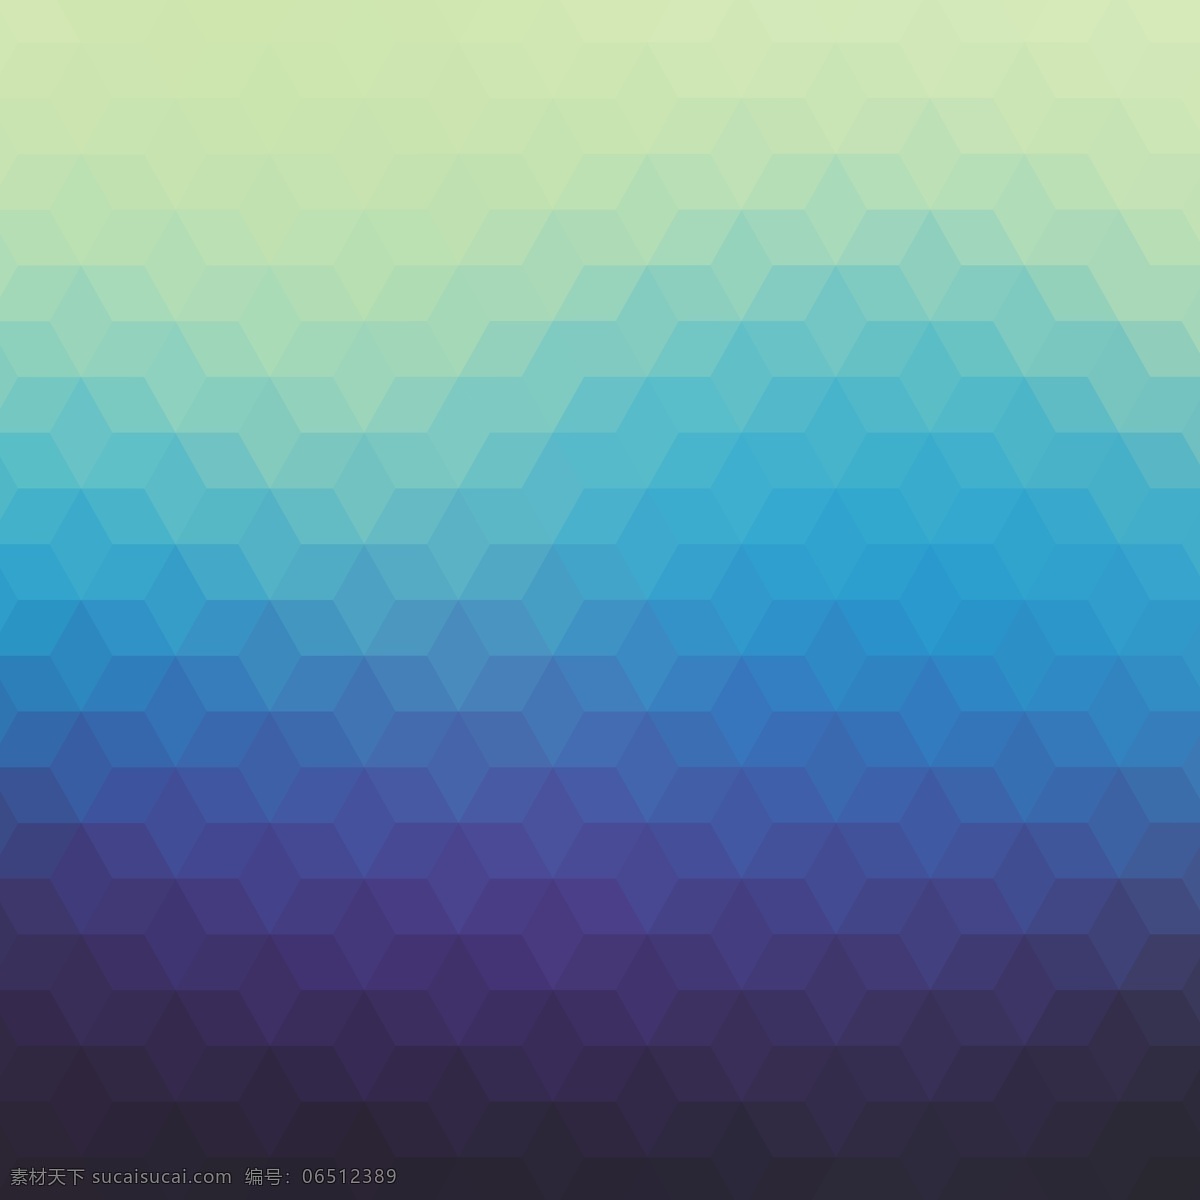 蓝色抽象背景 背景 抽象 几何 三角 蓝色 钻石 多边形 壁纸 矢量 三角形 渐变 效果